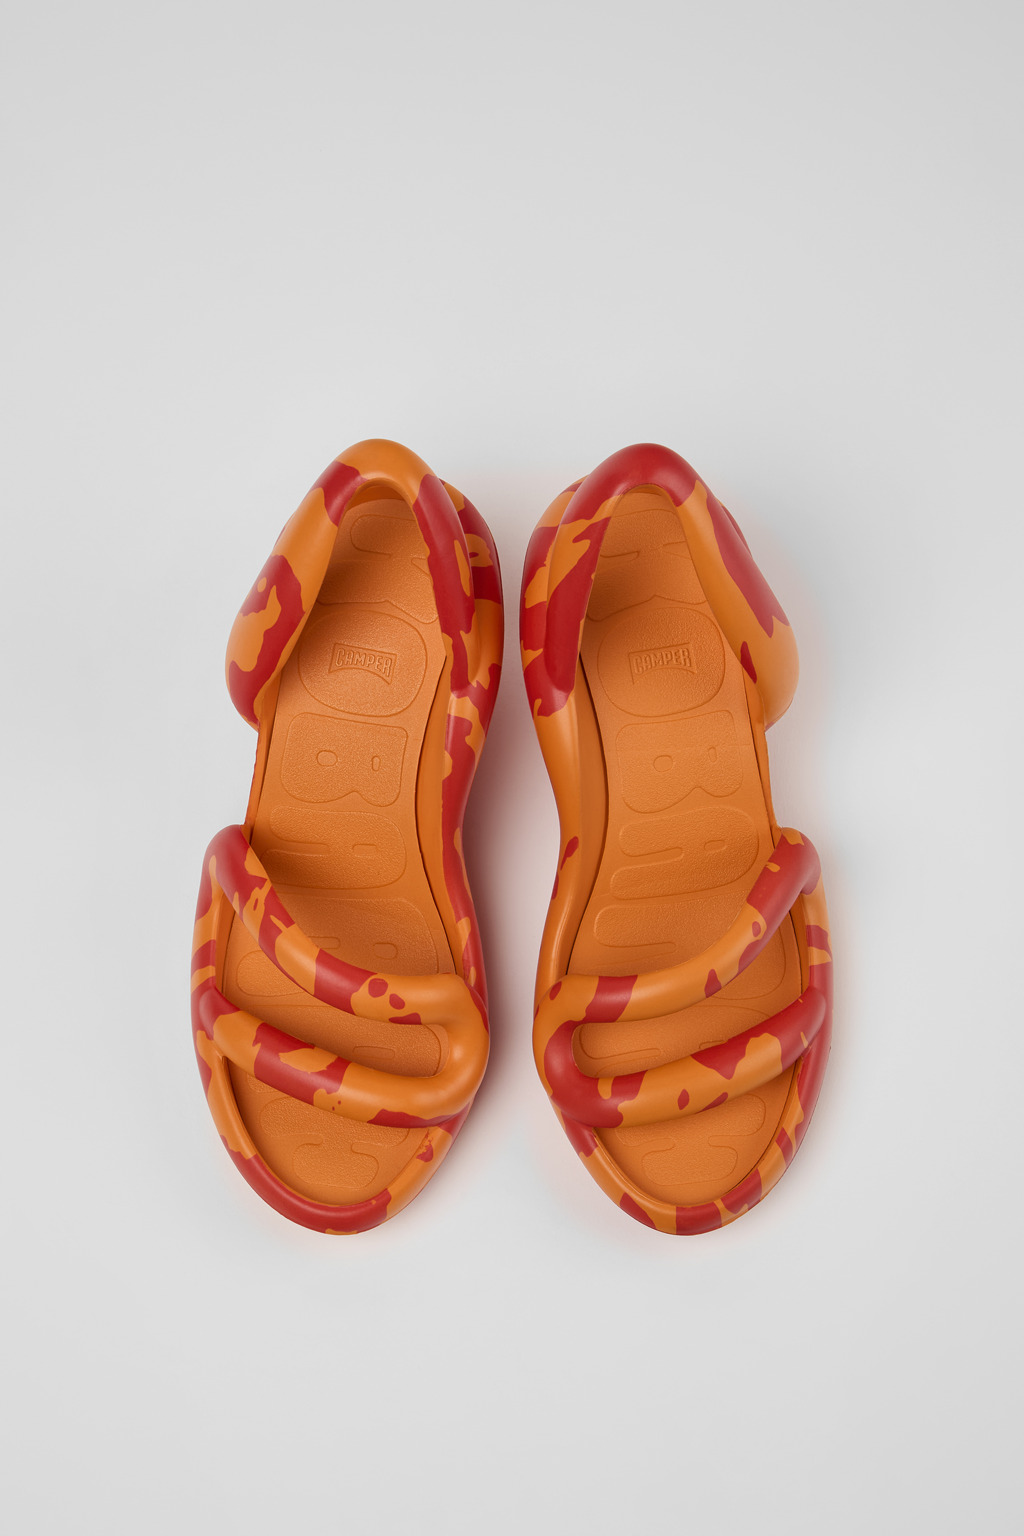 Kobarah Multicolor Sandals for Women - Camper Shoes